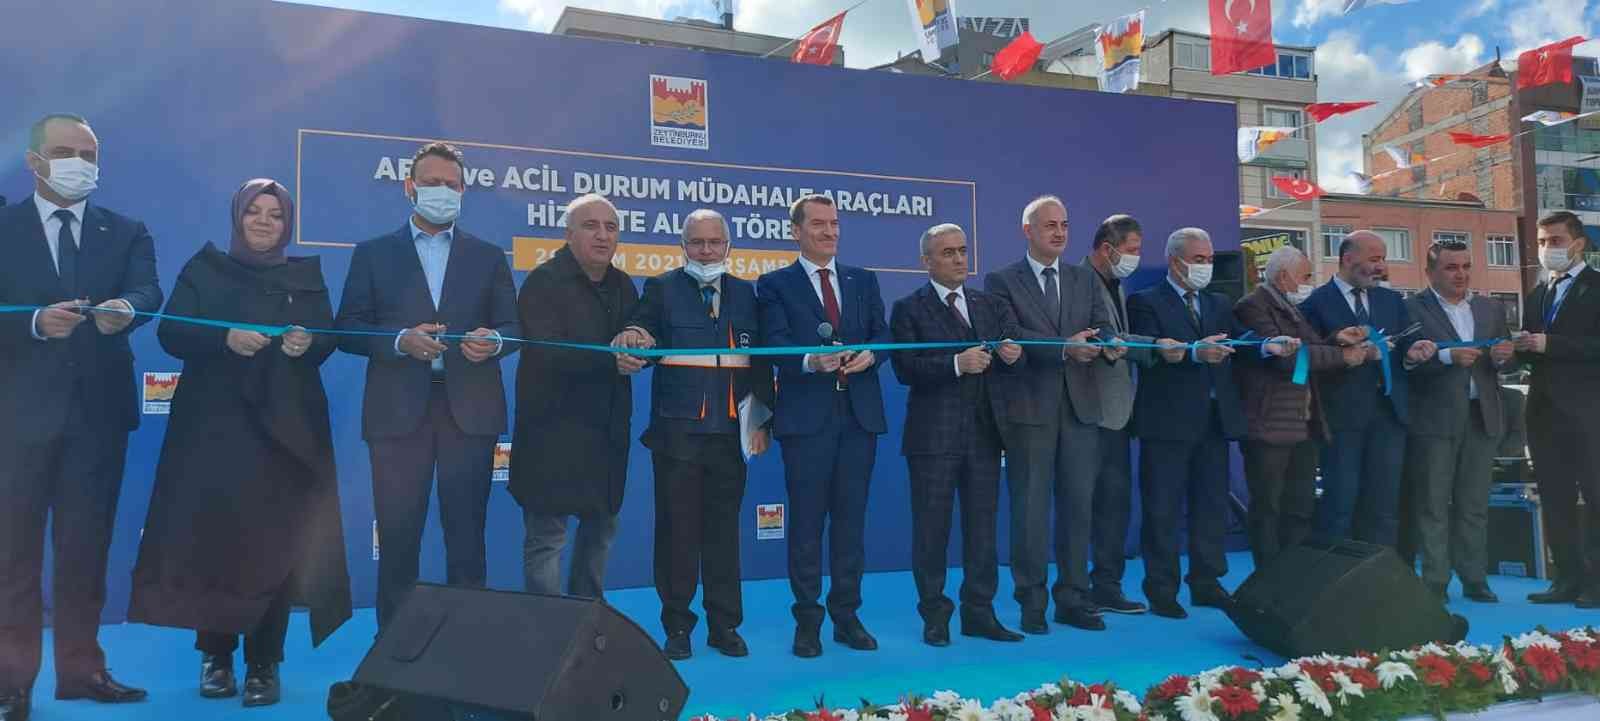 Zeytinburnu’nda ‘Mobil Mutfak Tırı’ hizmete alındı #istanbul